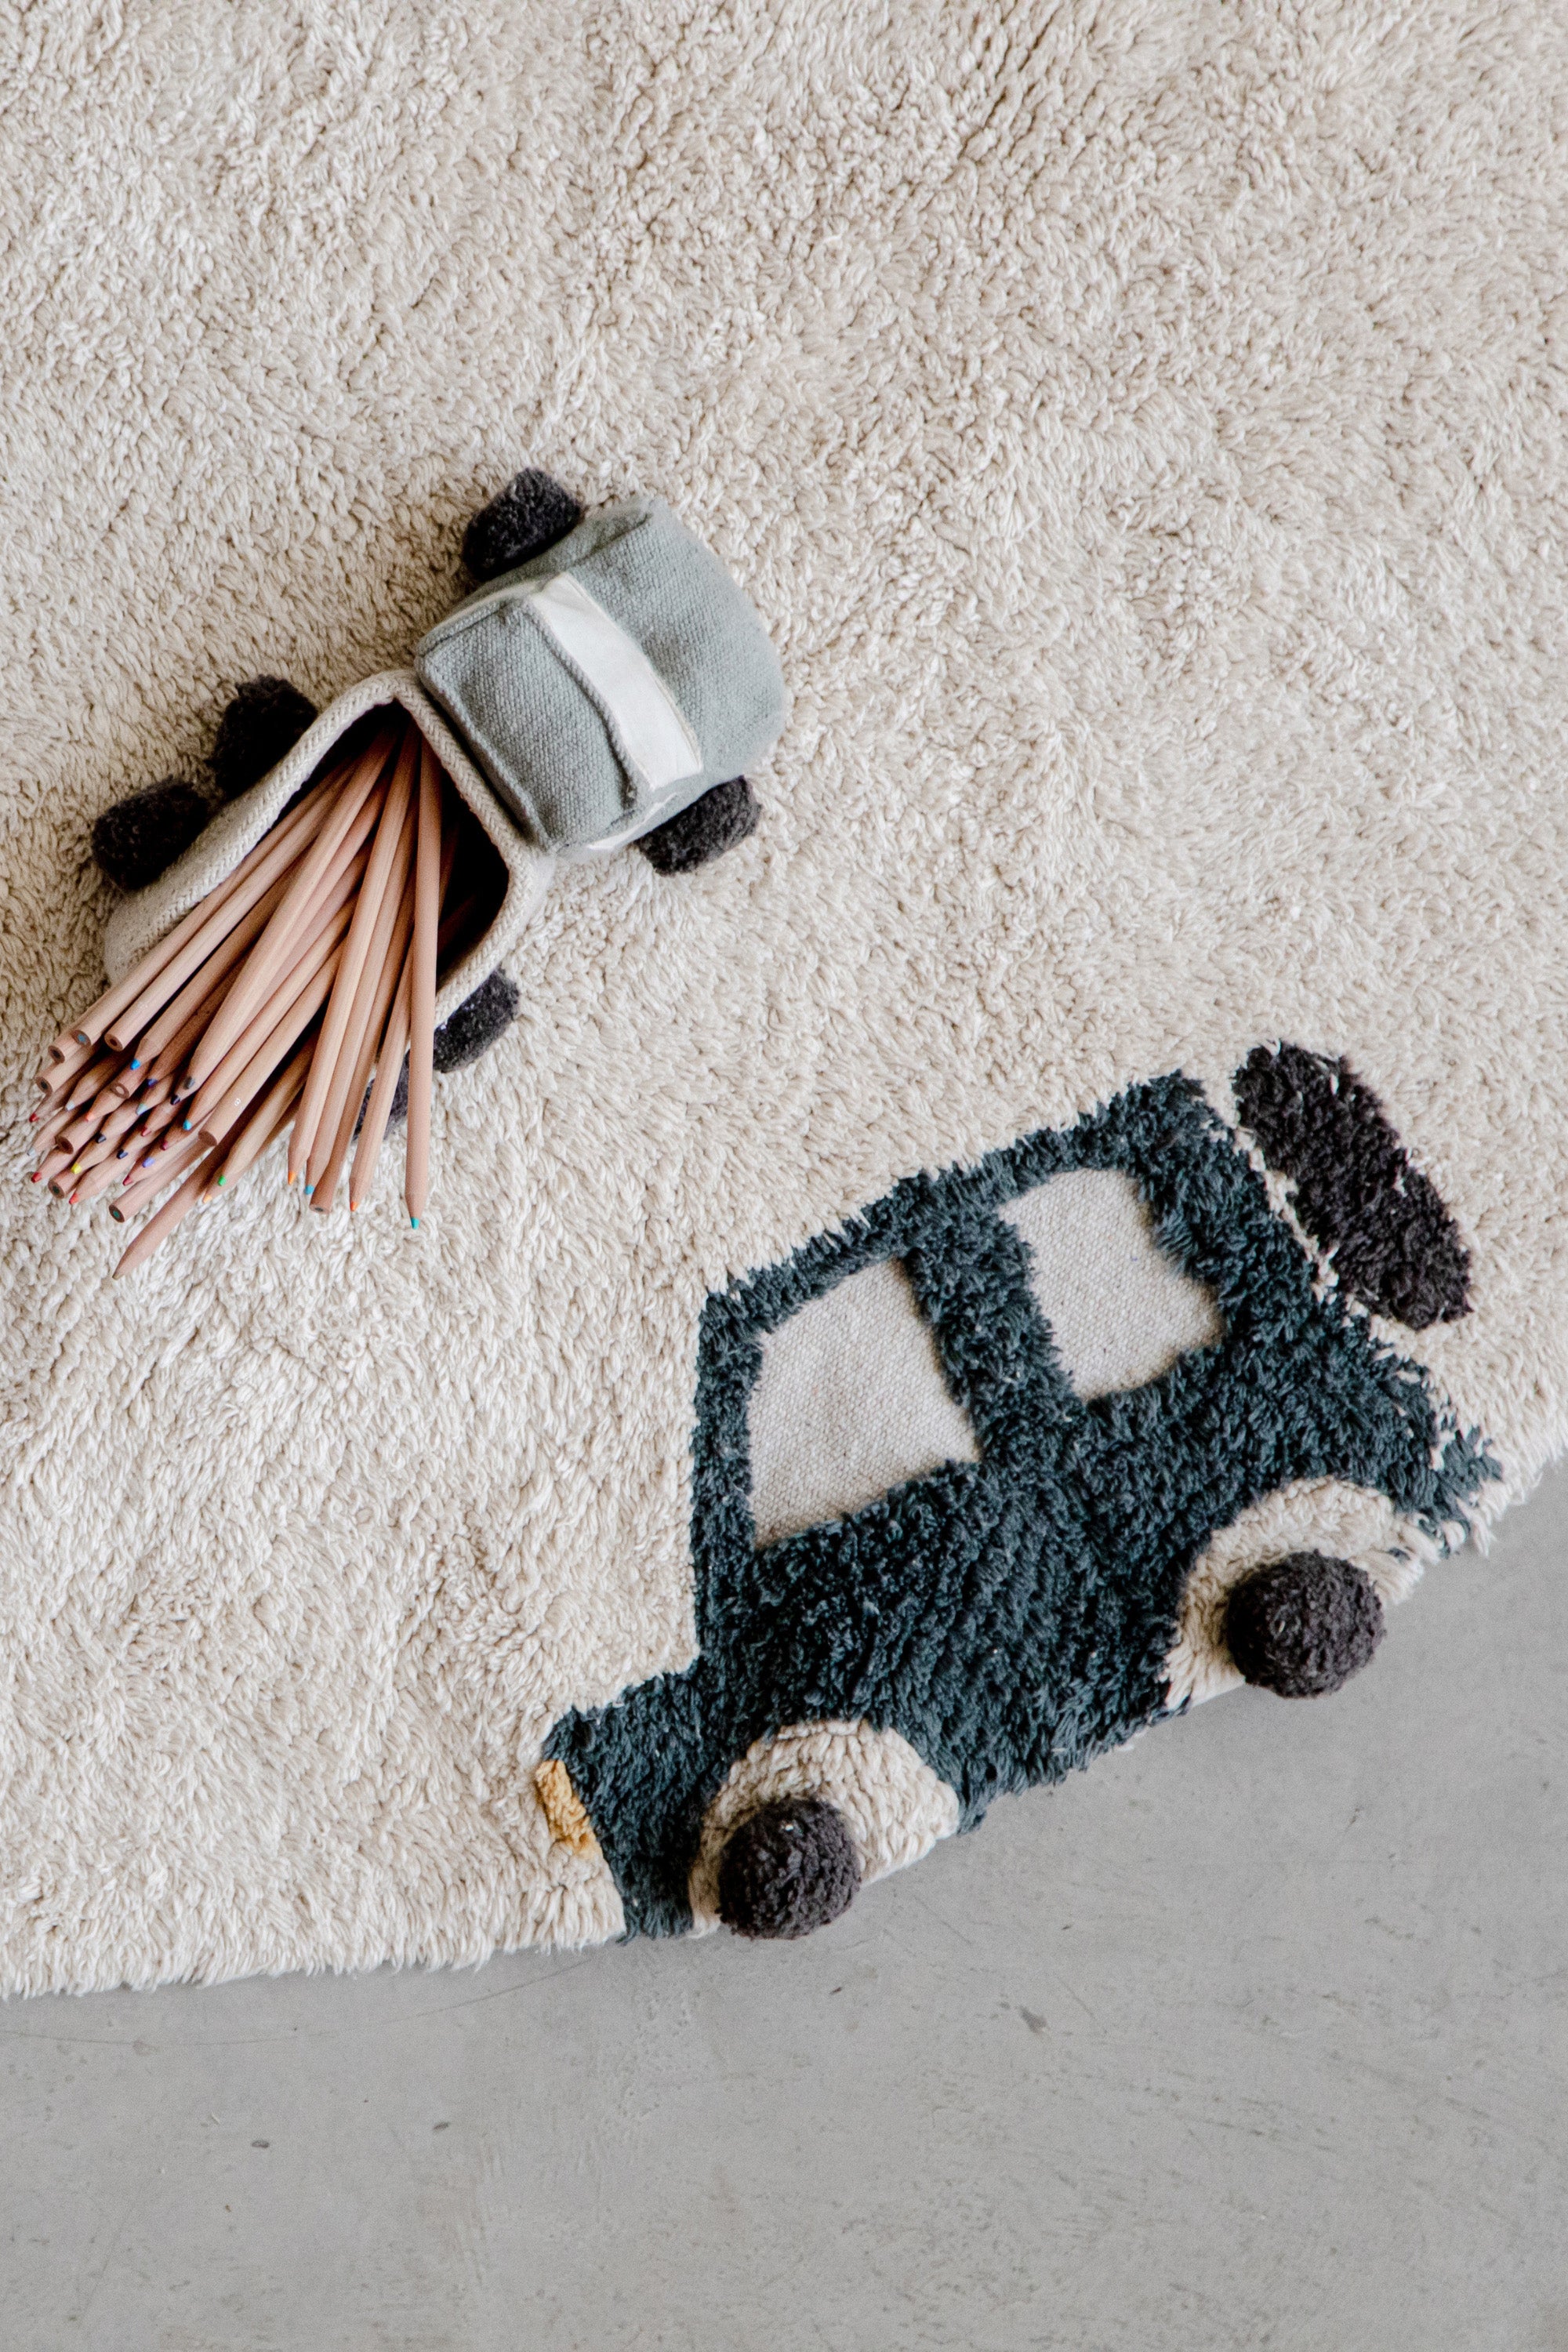 Round cream childs rug with vehicle motifs